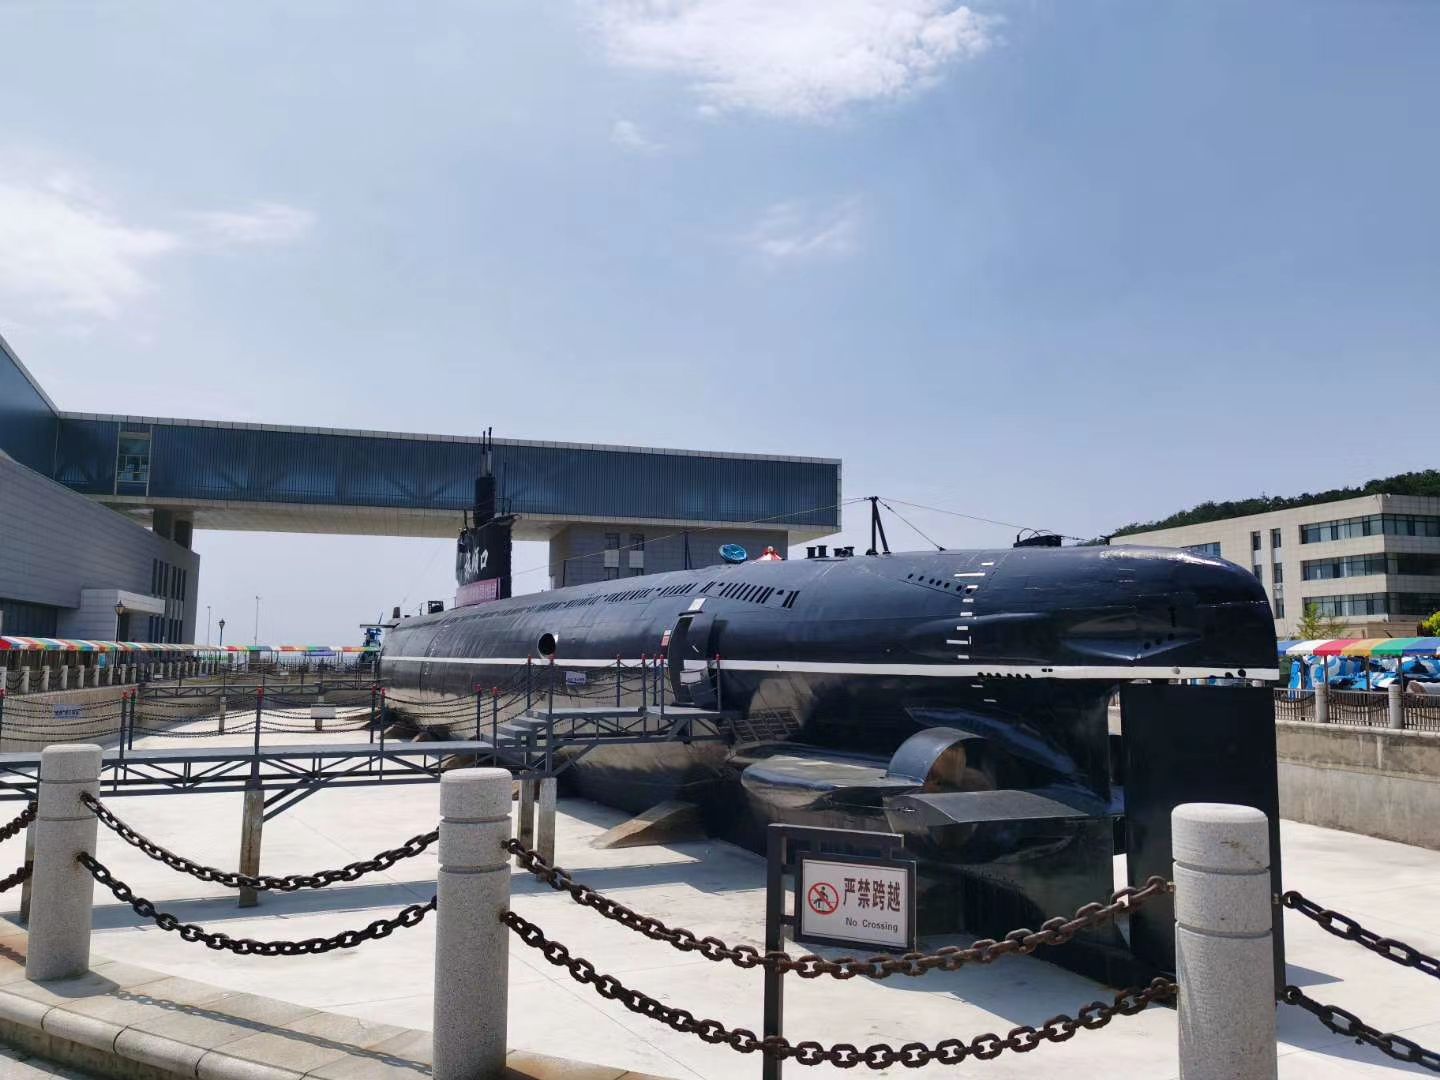 潜艇巡航及武器装备互动体验第二季_大连旅顺潜艇博物馆